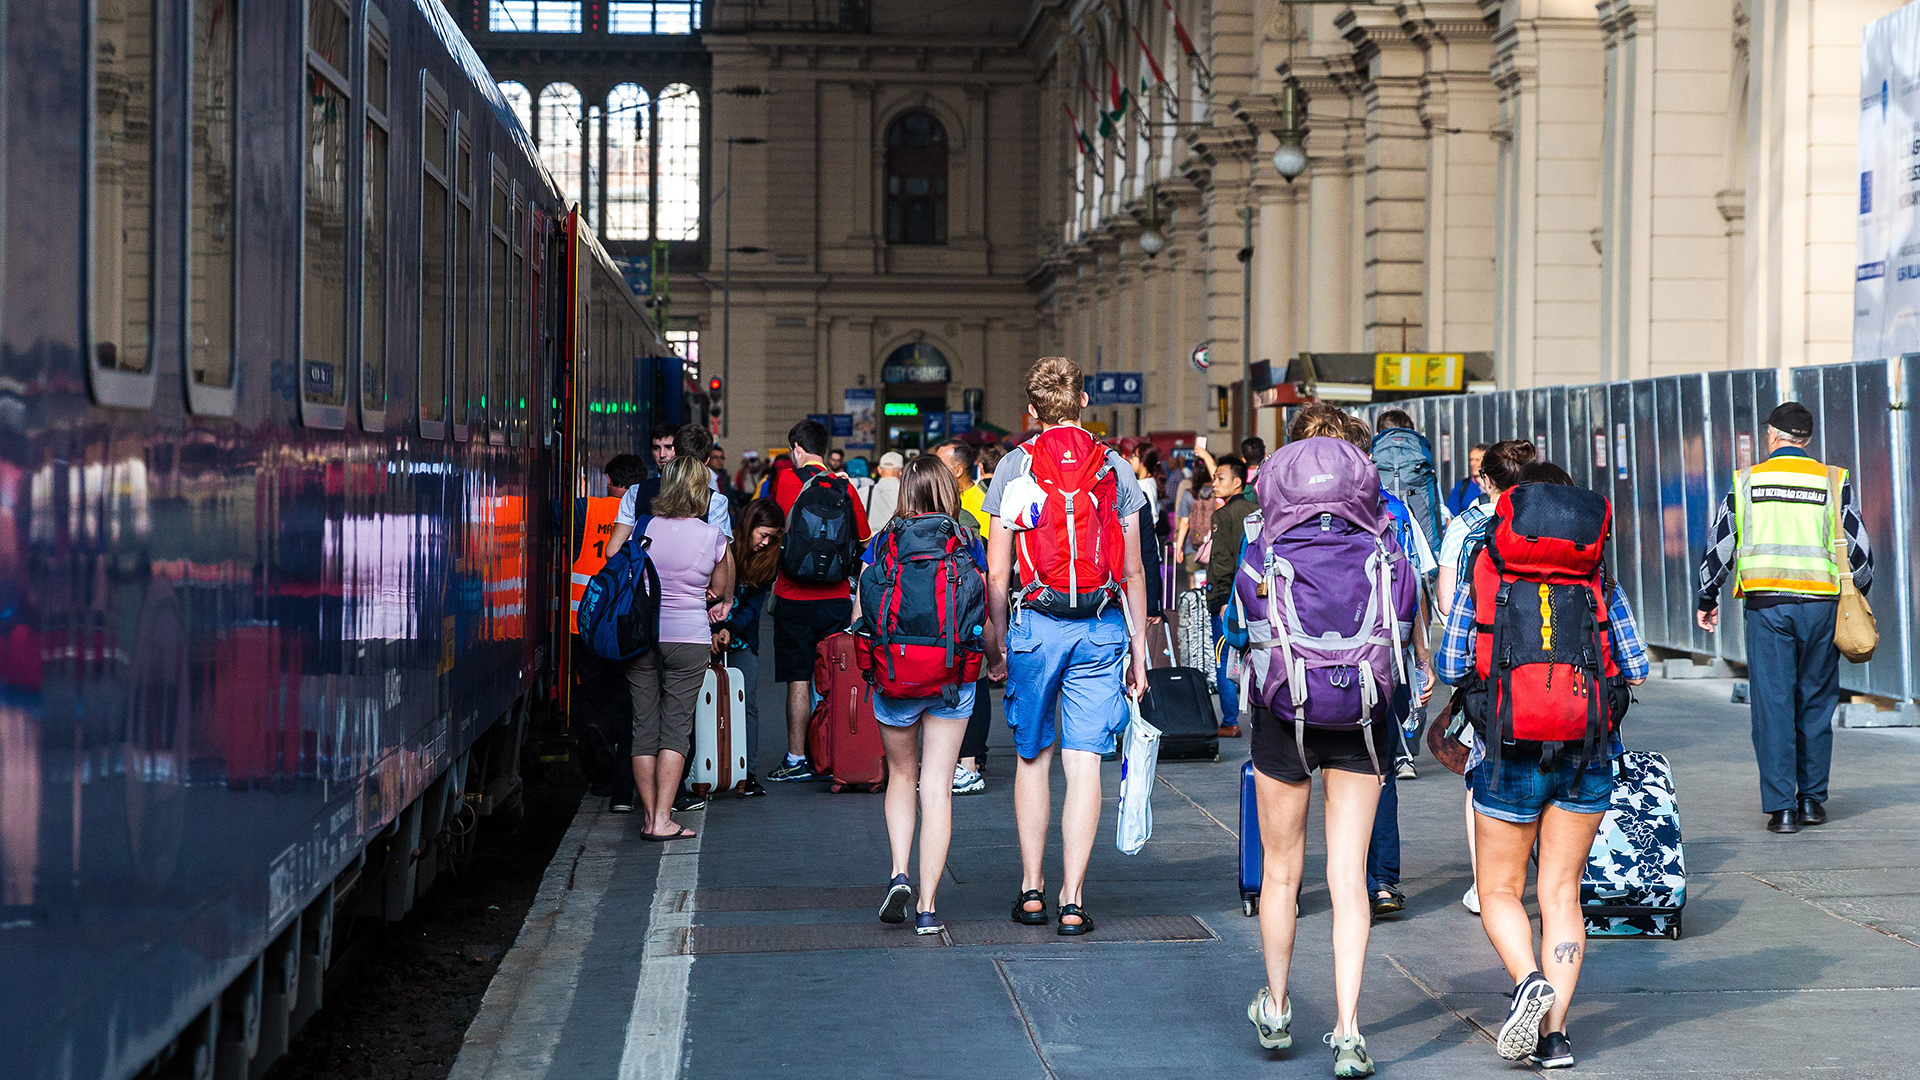 Reisende mit Rucksäcken in Budapest am Bahnhof Keleti, Ungarn. | picture alliance / pressefoto_ko